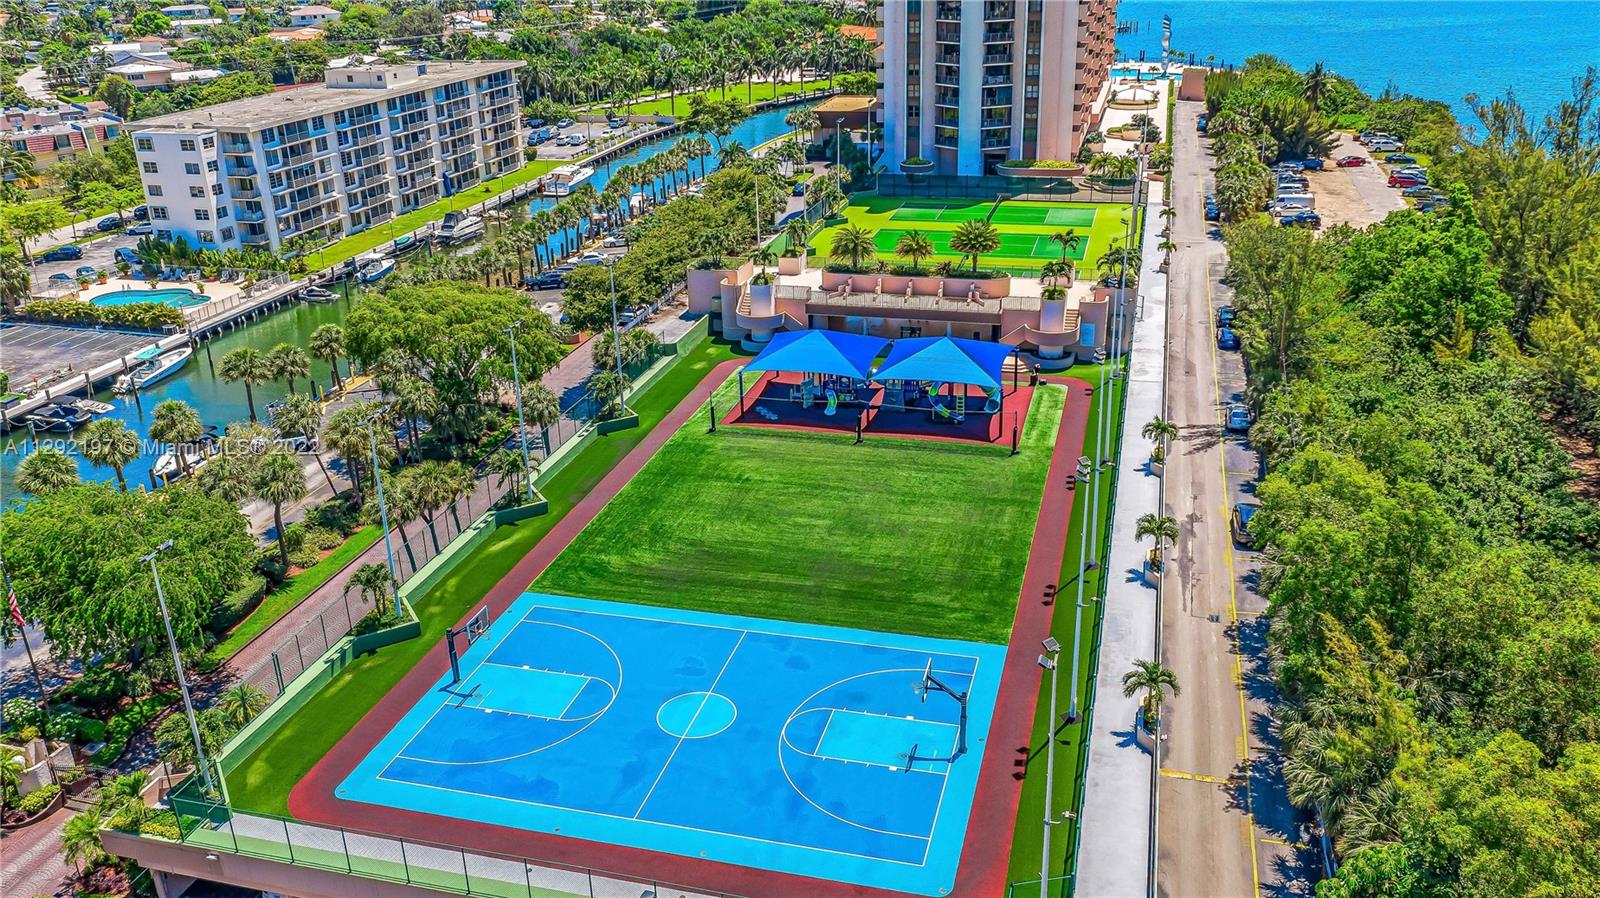 Basketball court, children play ground + tennis courts